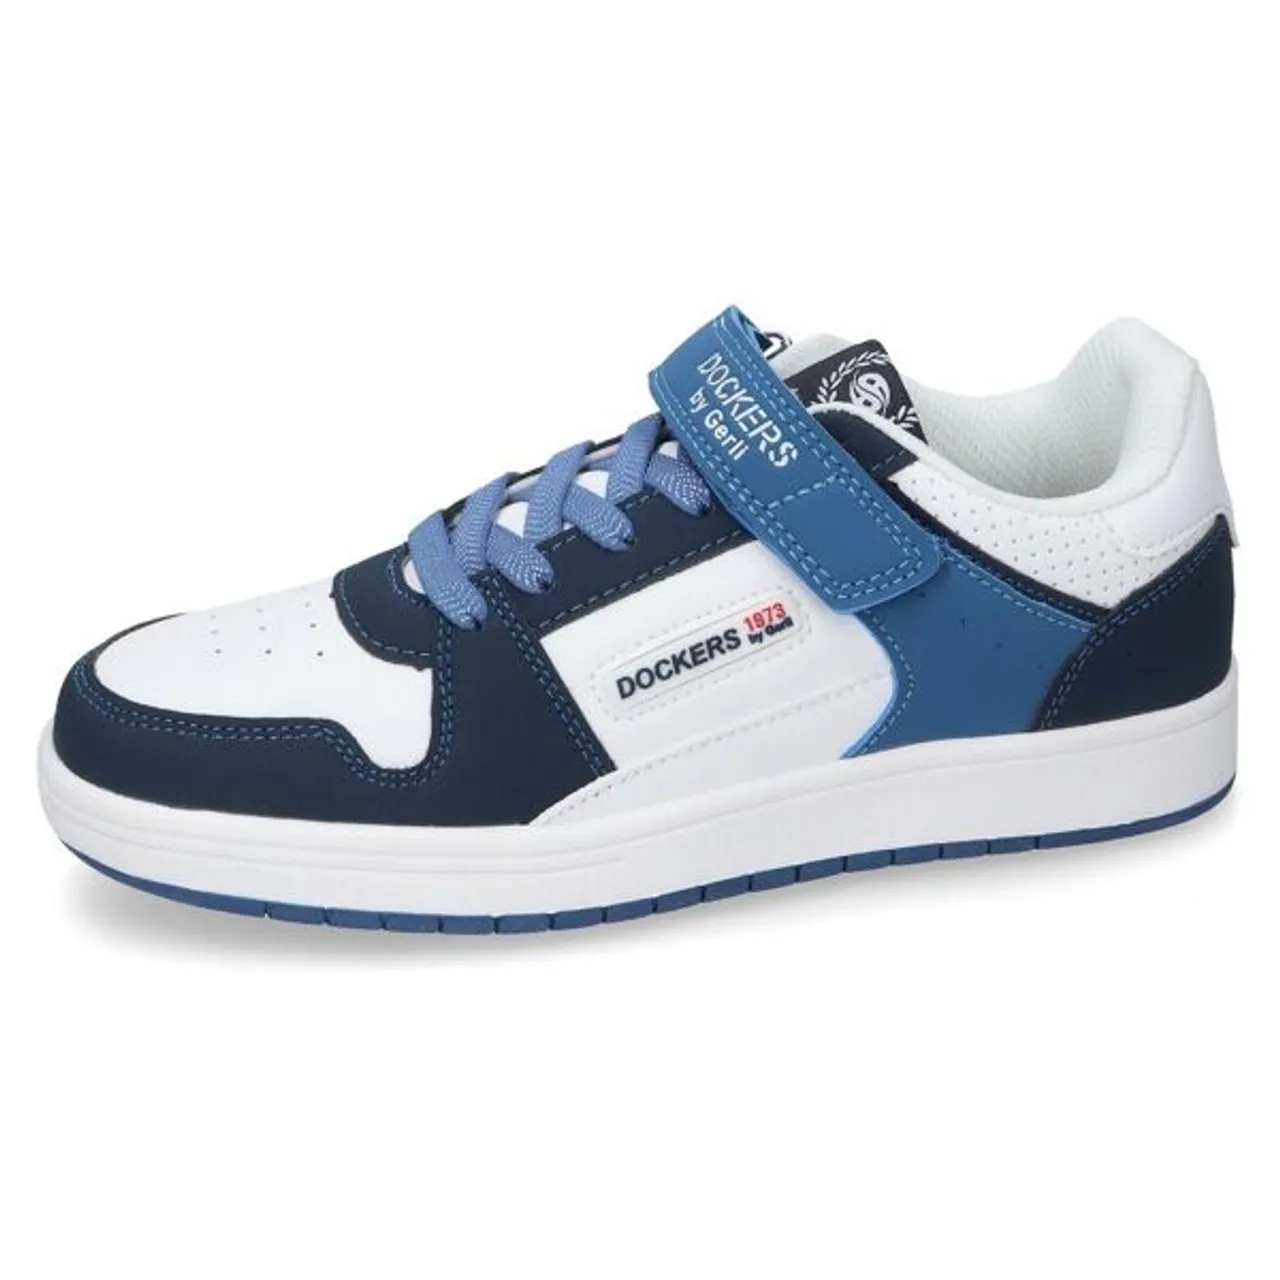 Slip-On Sneaker DOCKERS BY GERLI Gr. 41, bunt (blau, multi) Kinder Schuhe Sneaker Freizeitschuh, Halbschuh, Schnürschuh mit moderner Farbkombi